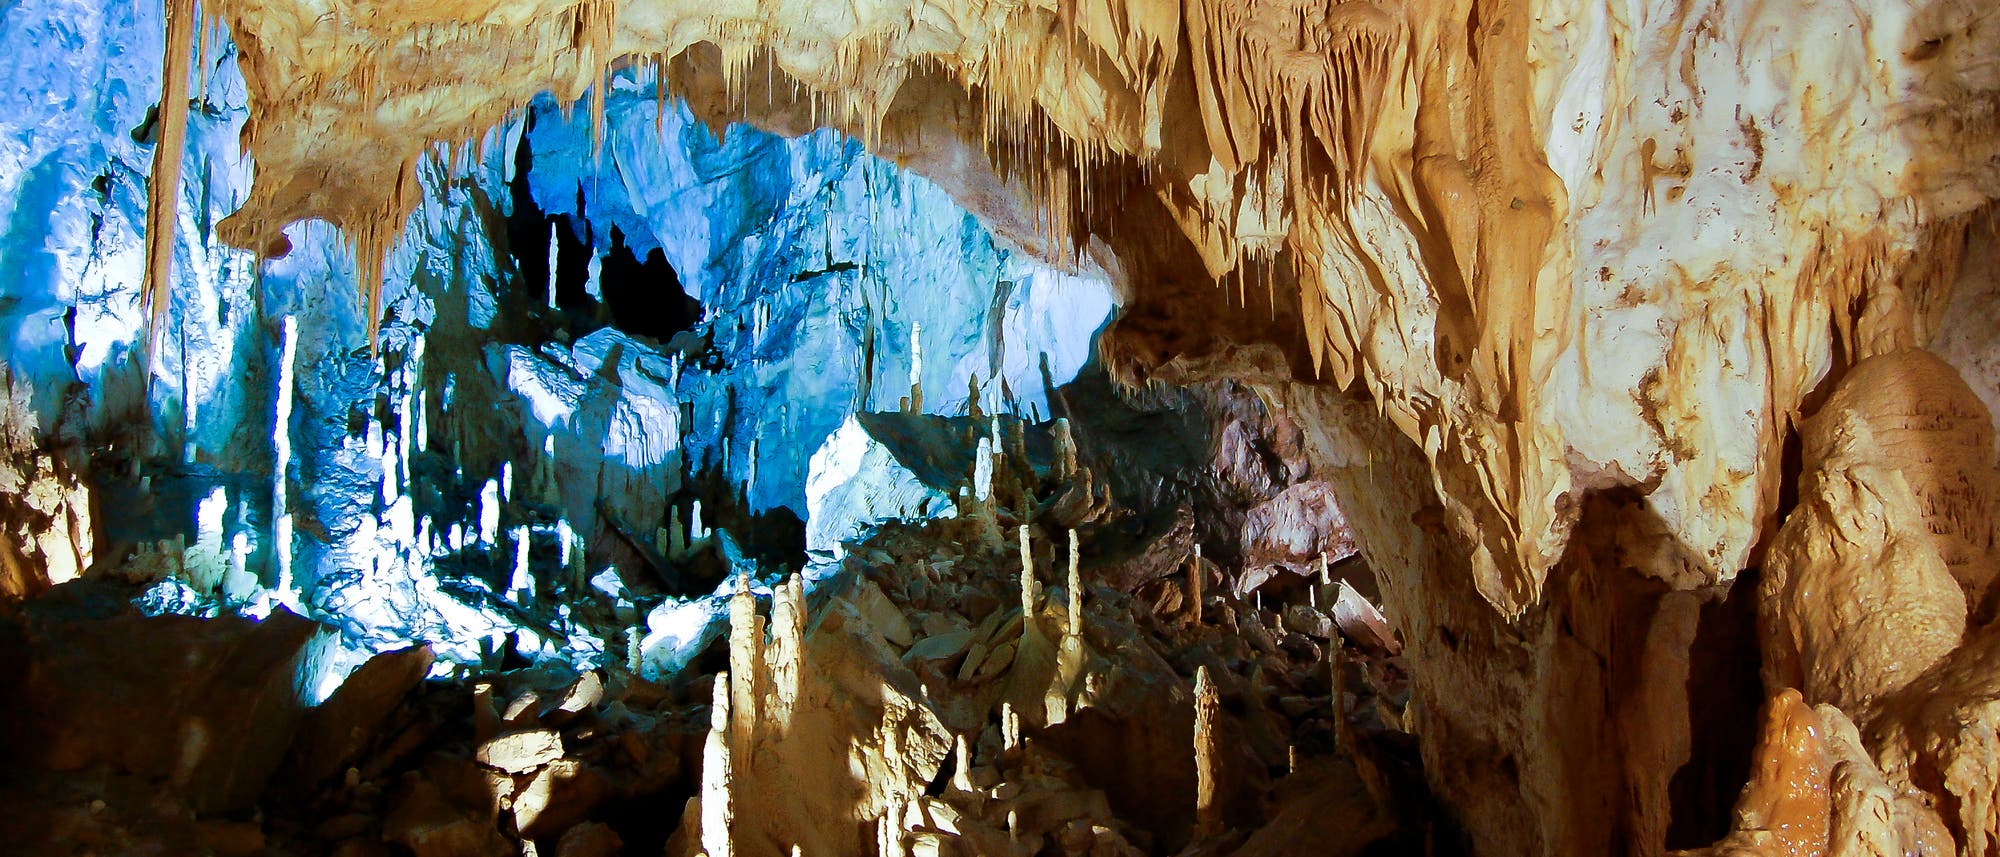 Eine hohe Tropfsteinhöhle spektakulär ausgeleuchtet.